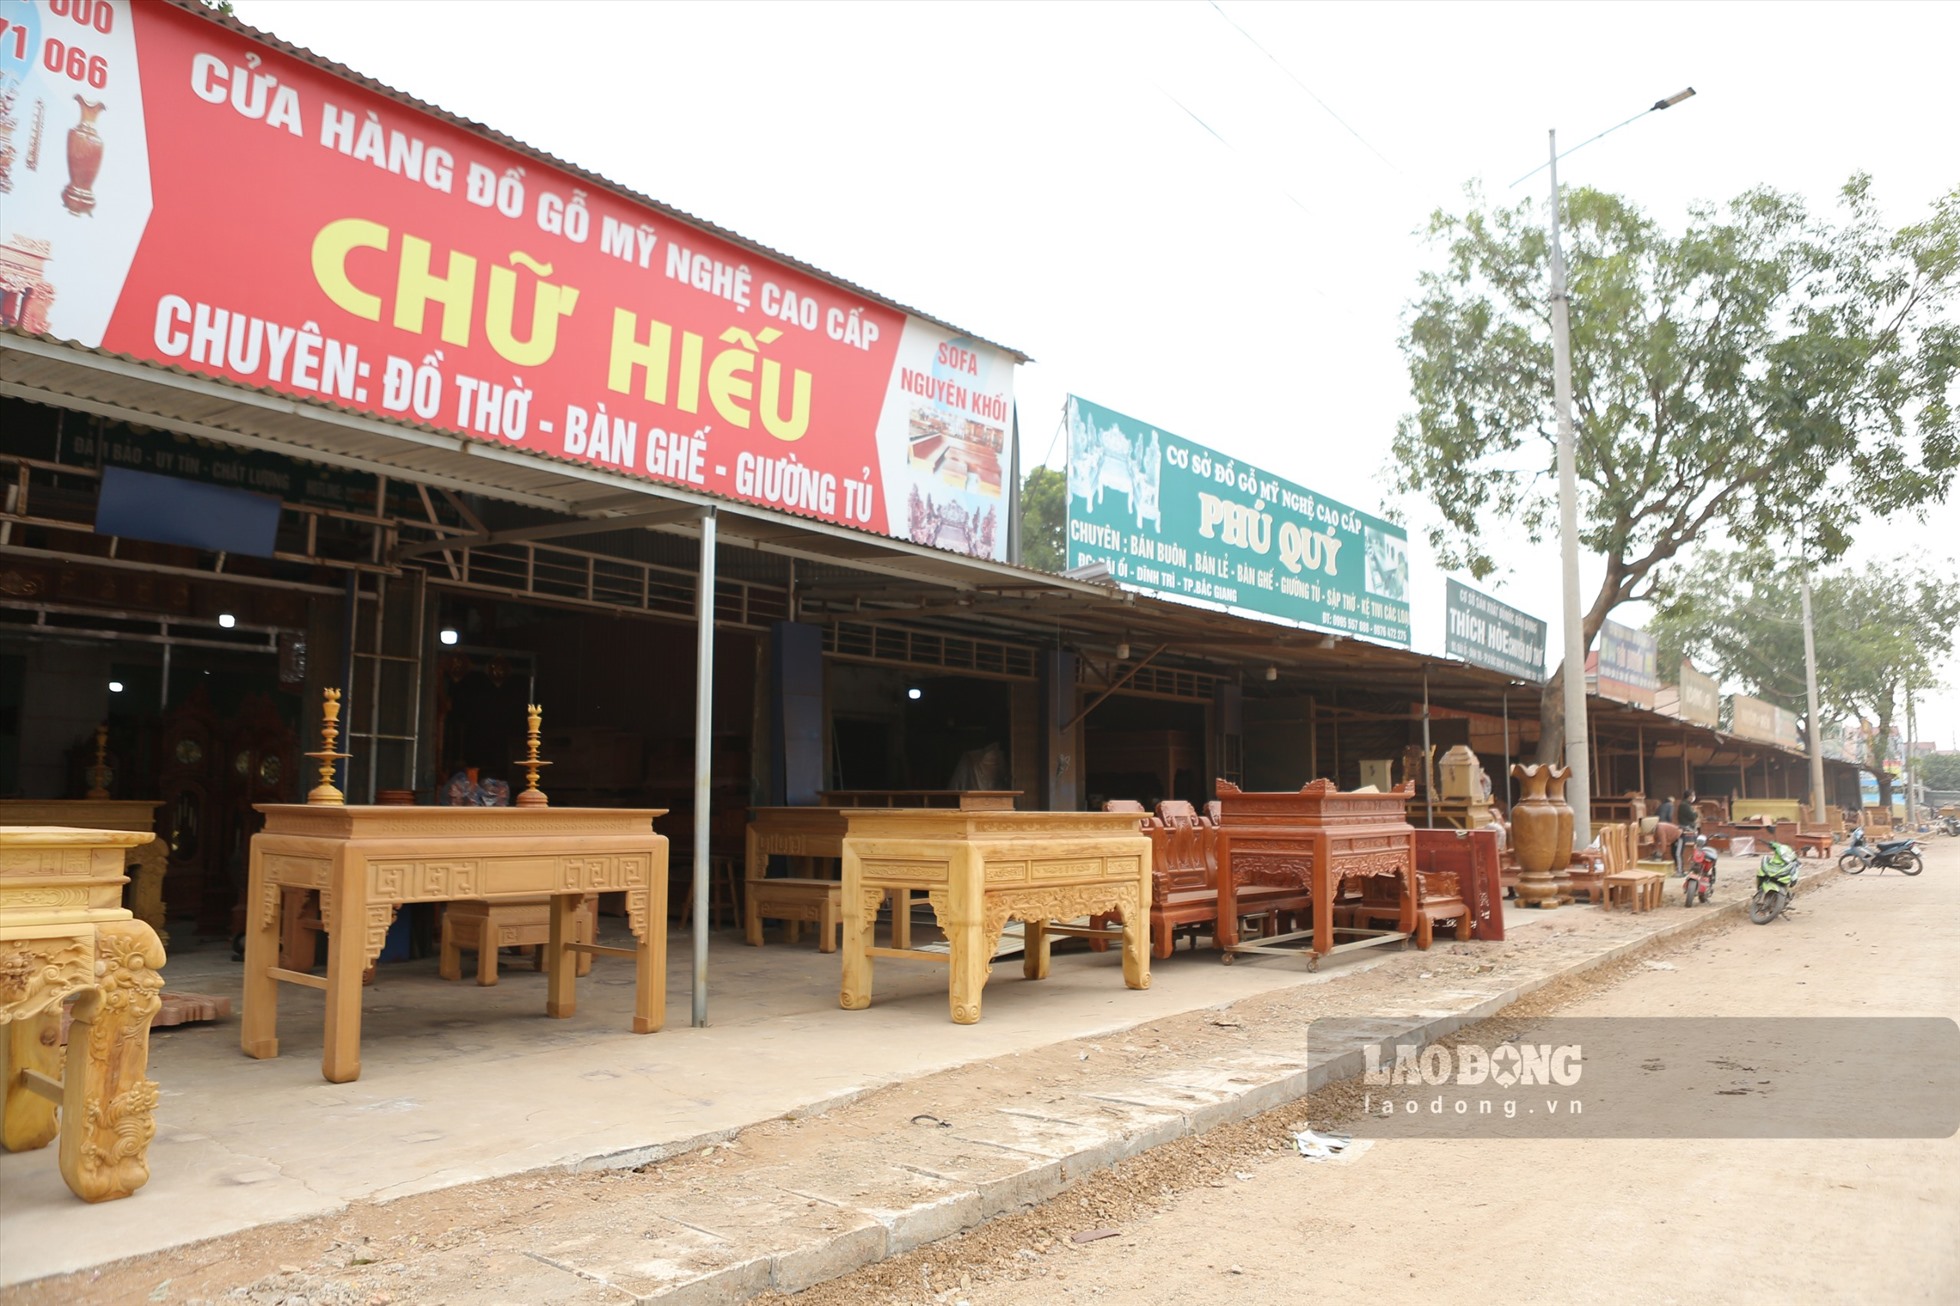 Hợp tác xã (HTX) Mộc Bãi Ổi, thành phố Bắc Giang có hơn 100 hộ sản xuất đồ mộc trong làng nghề, trong đó có 58 thành viên HTX Mộc Bãi Ổi. ảnh Nguyễn Kế